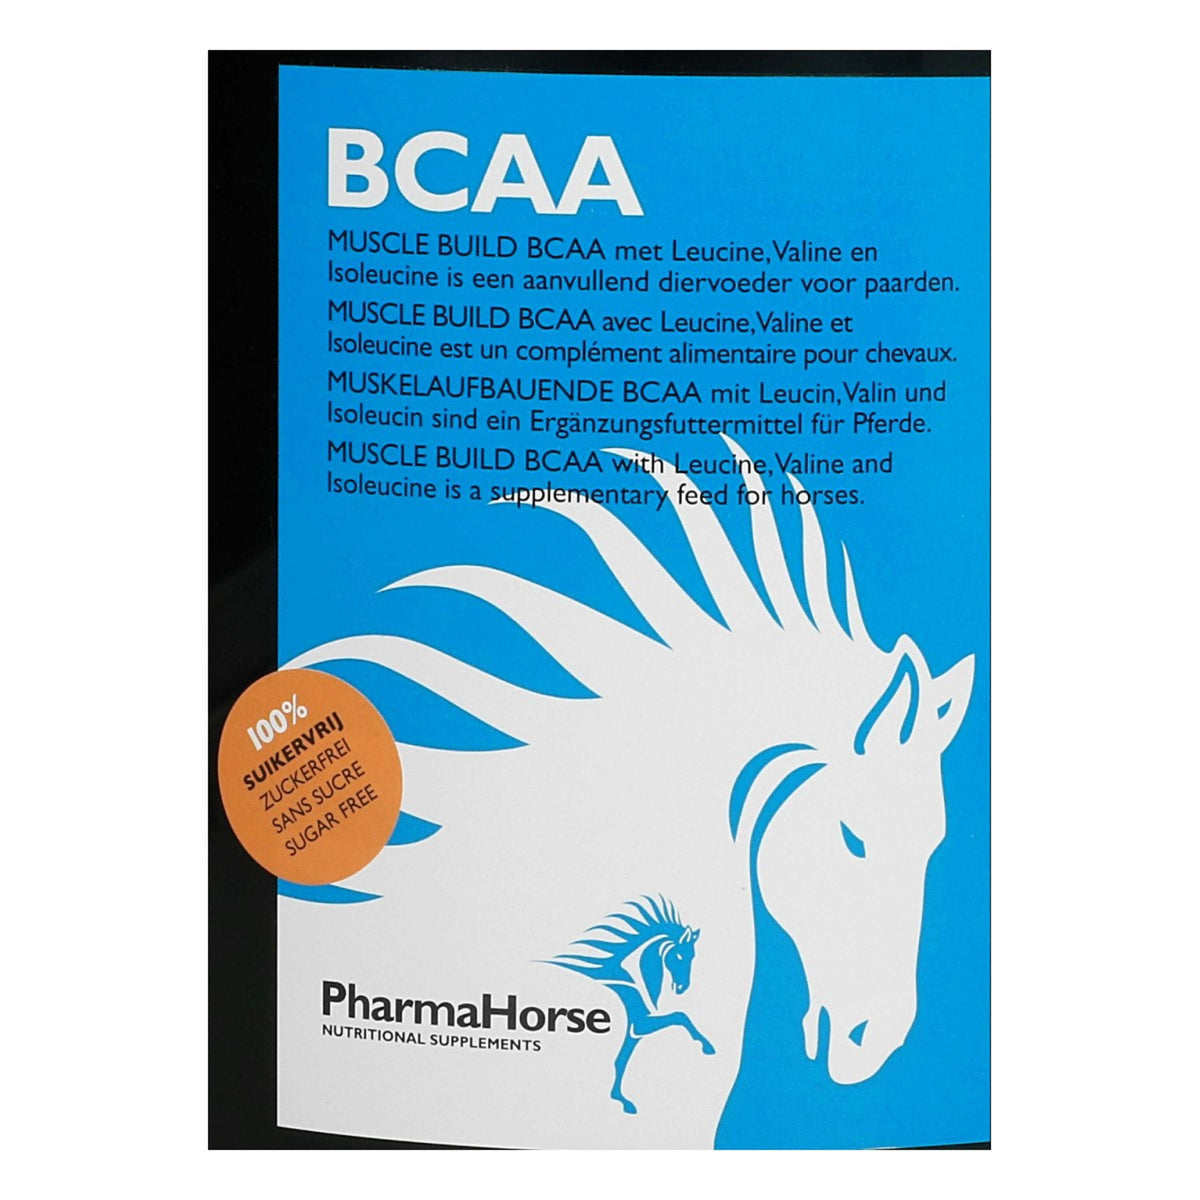 PharmaHorse BCAA